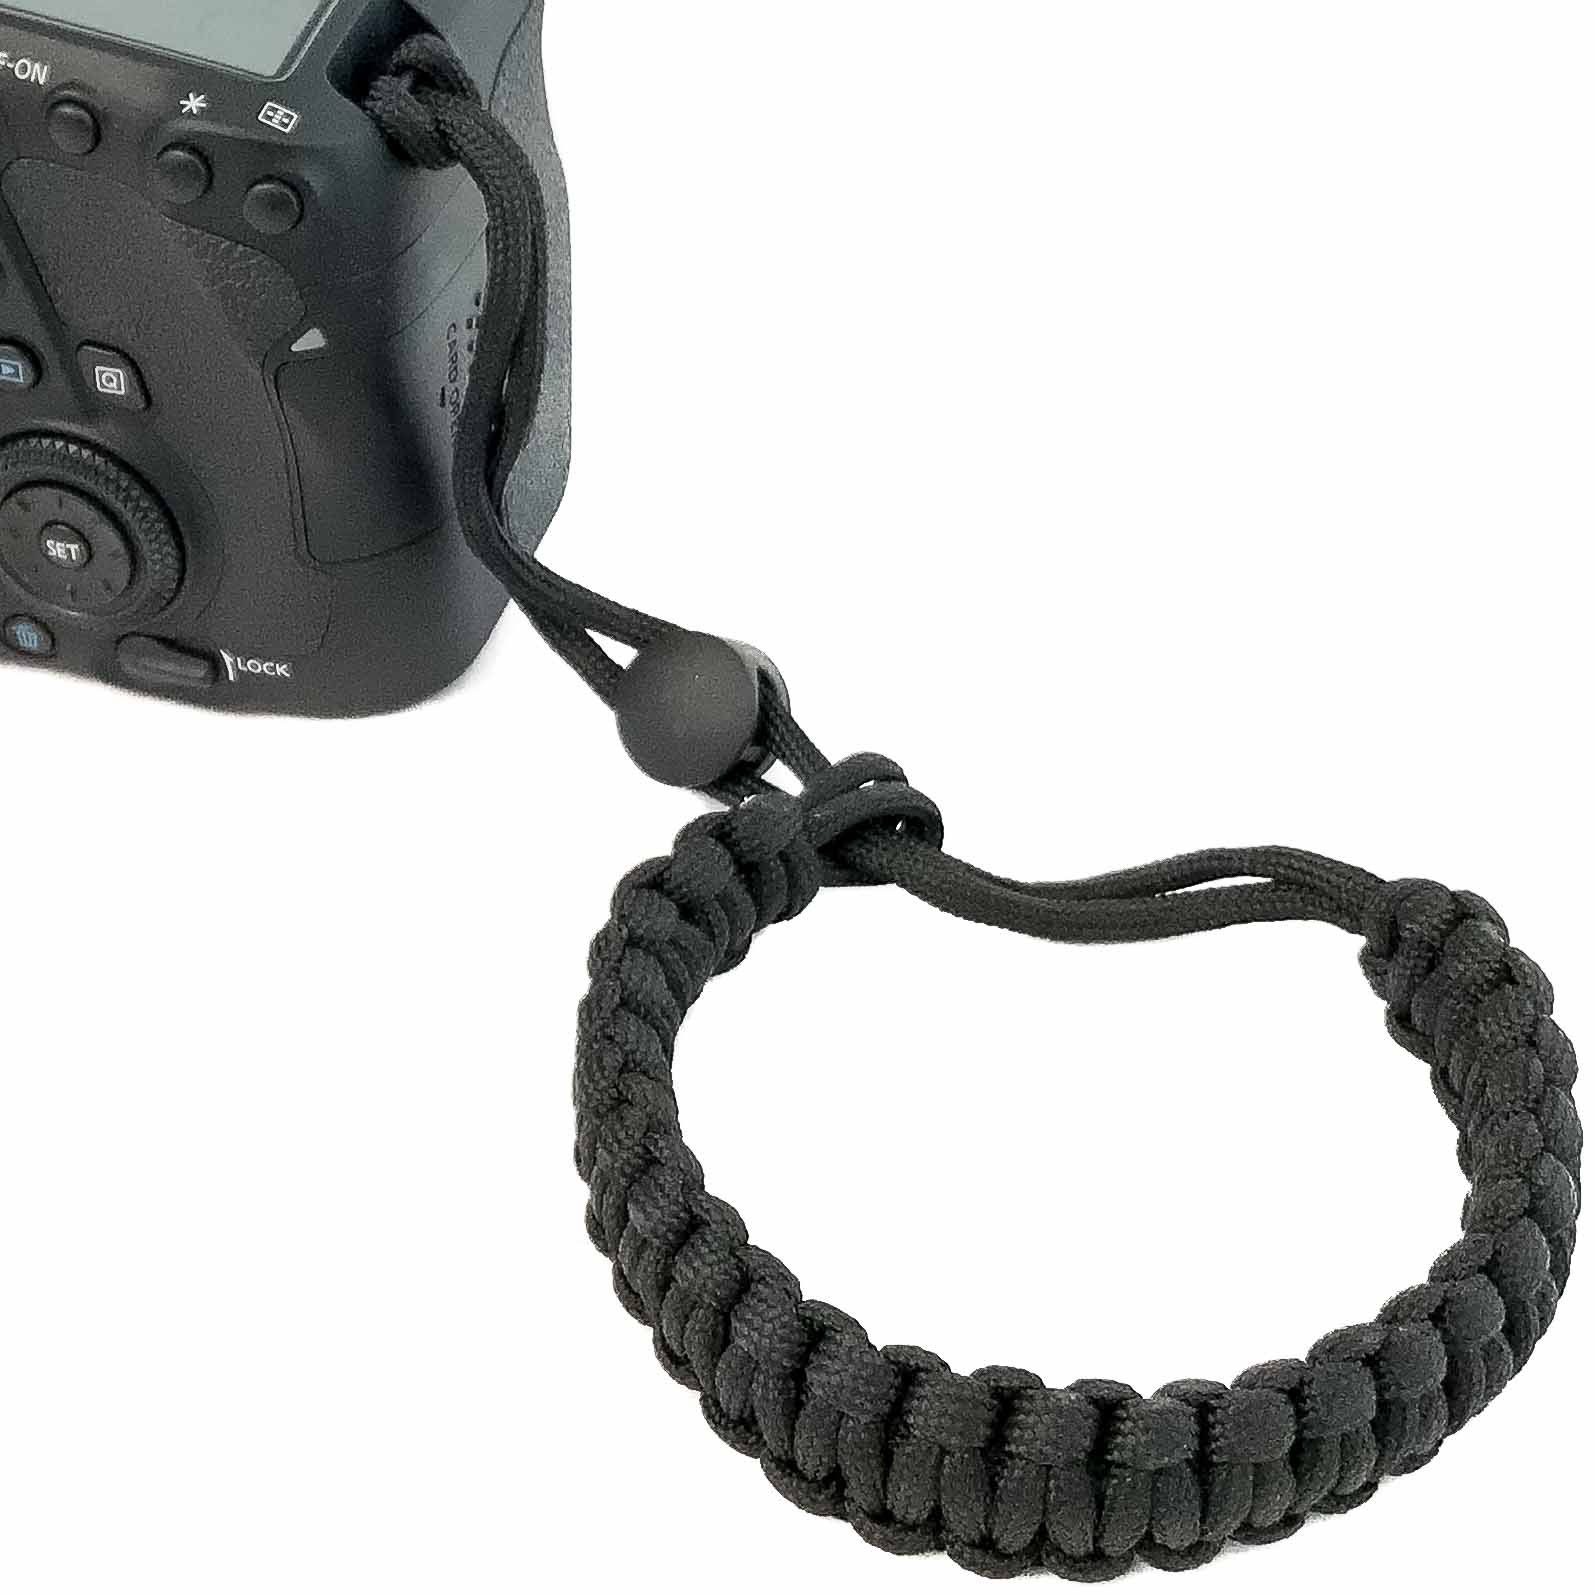 Lens-Aid Kamerazubehör-Set Handschlaufe Kordel Paracord zum Tragegurt. für Kamera: Kameragurt Schwarz Tragen Handgelenk Wrist-Band am DSLR